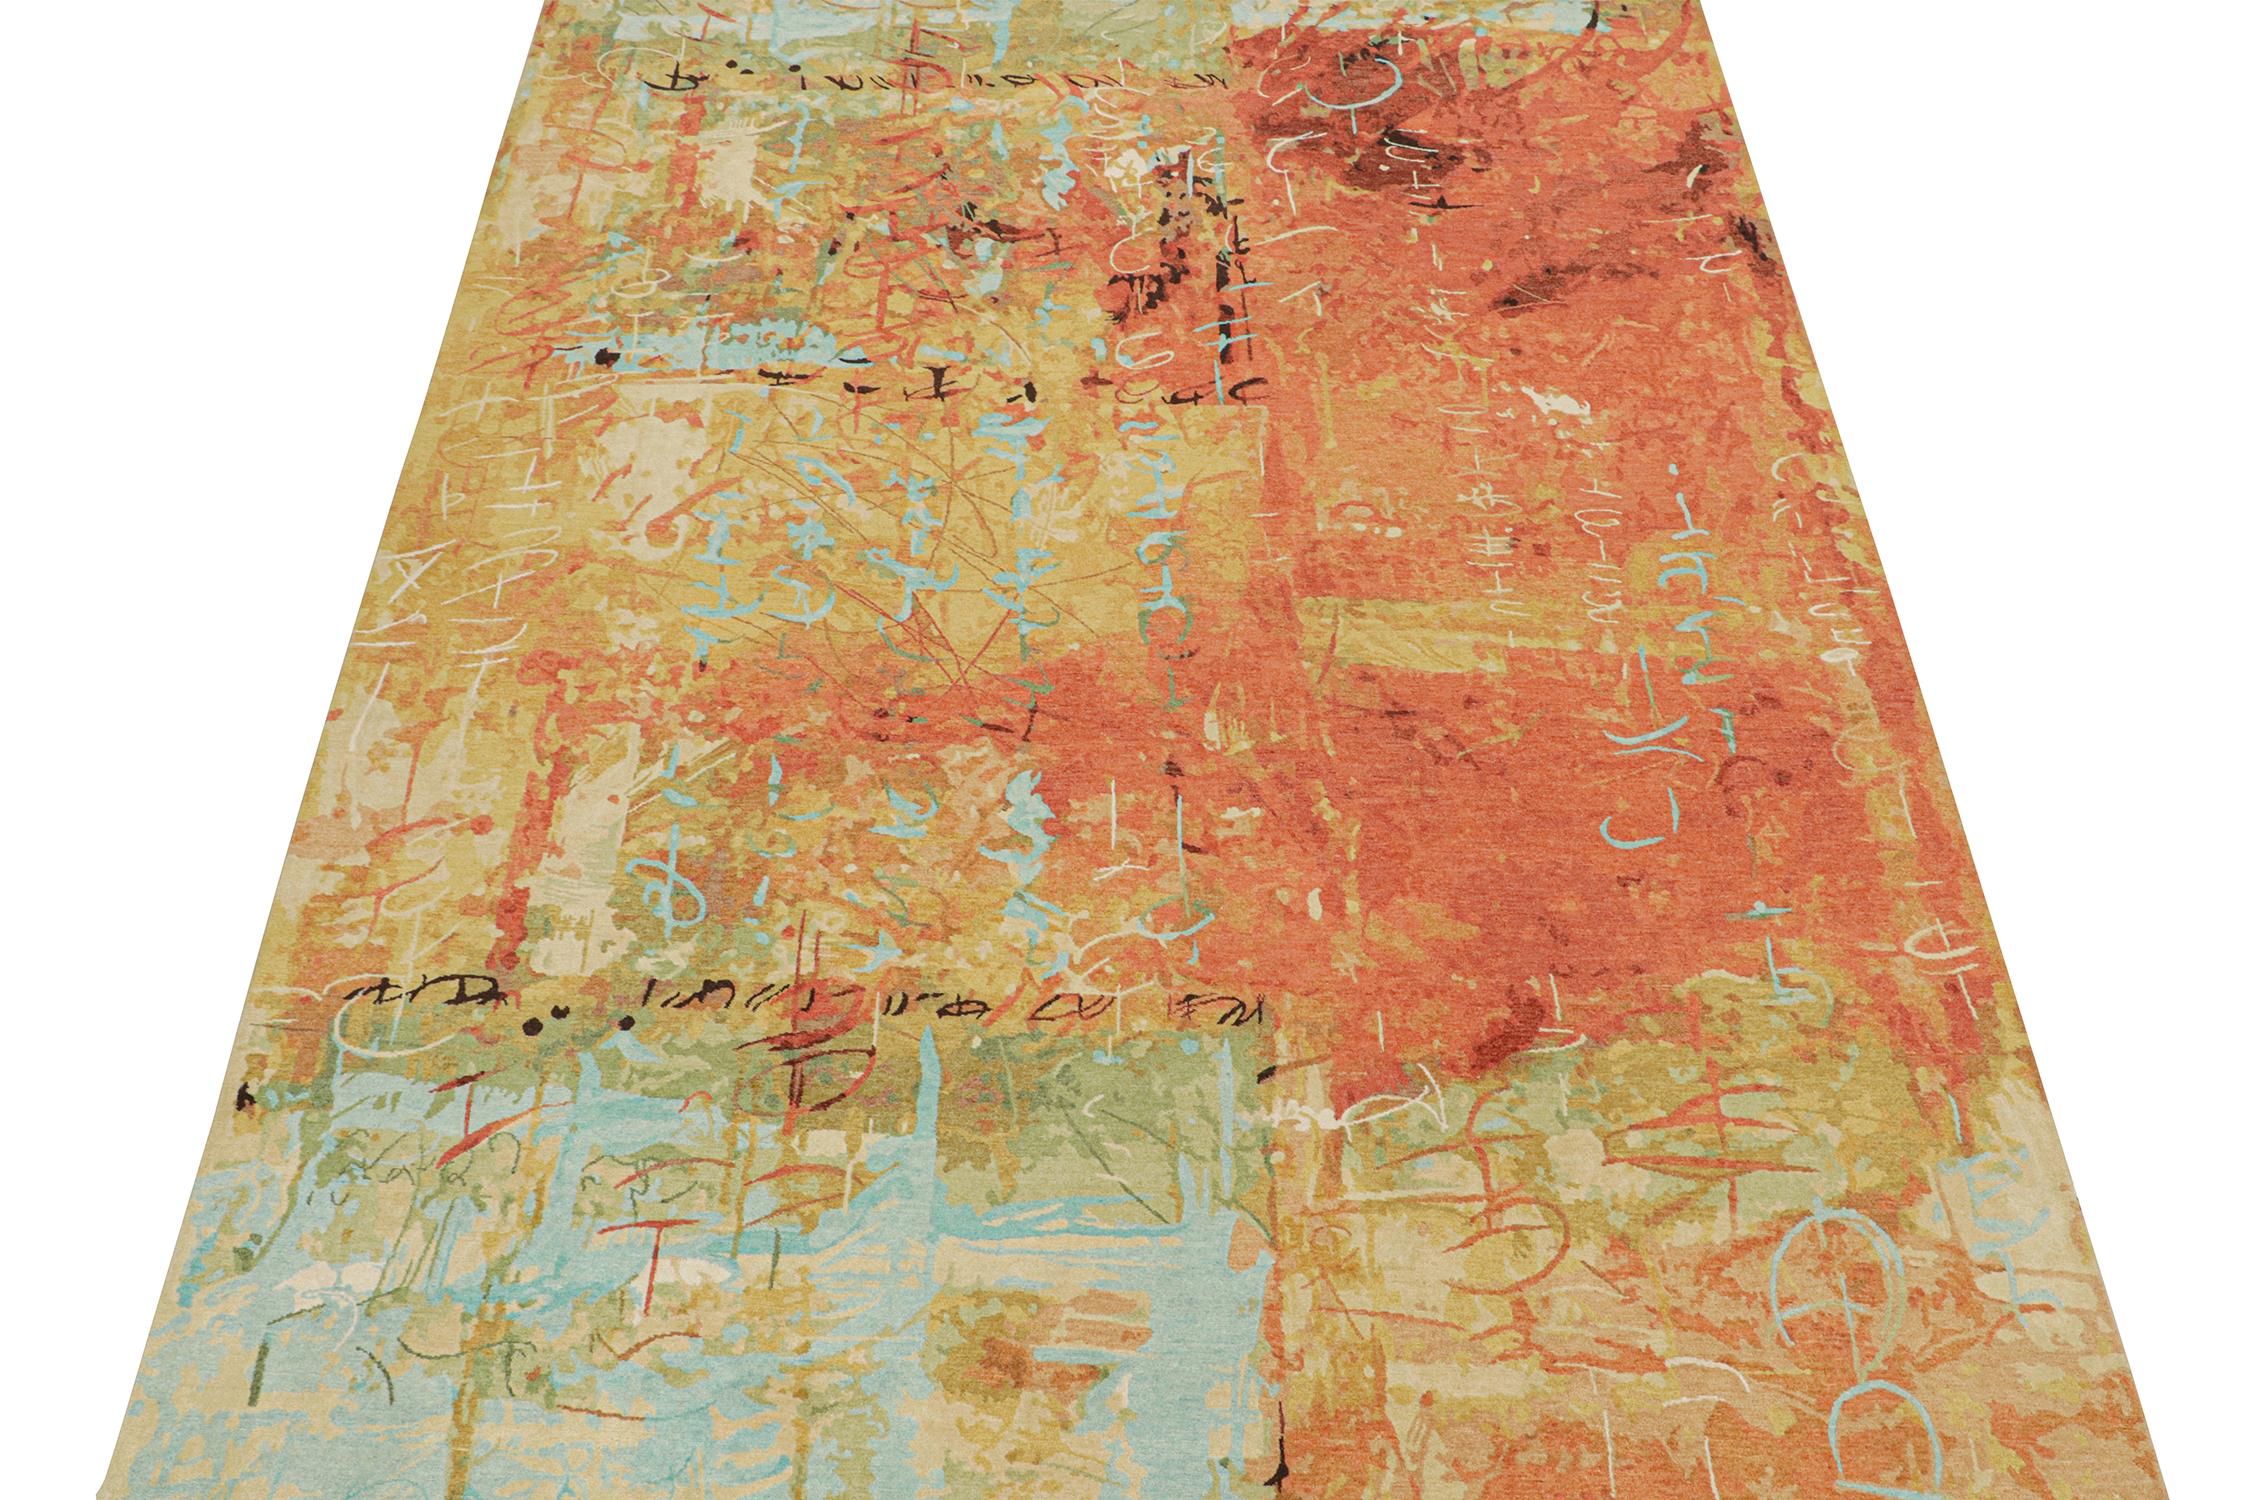 Ce tapis abstrait 9x12 est un nouvel ajout audacieux à la collection de tapis modernes de Rug & Kilim. Noué à la main en laine et en soie, son design s'inspire des sensibilités expressionnistes dans une qualité haut de gamme des plus